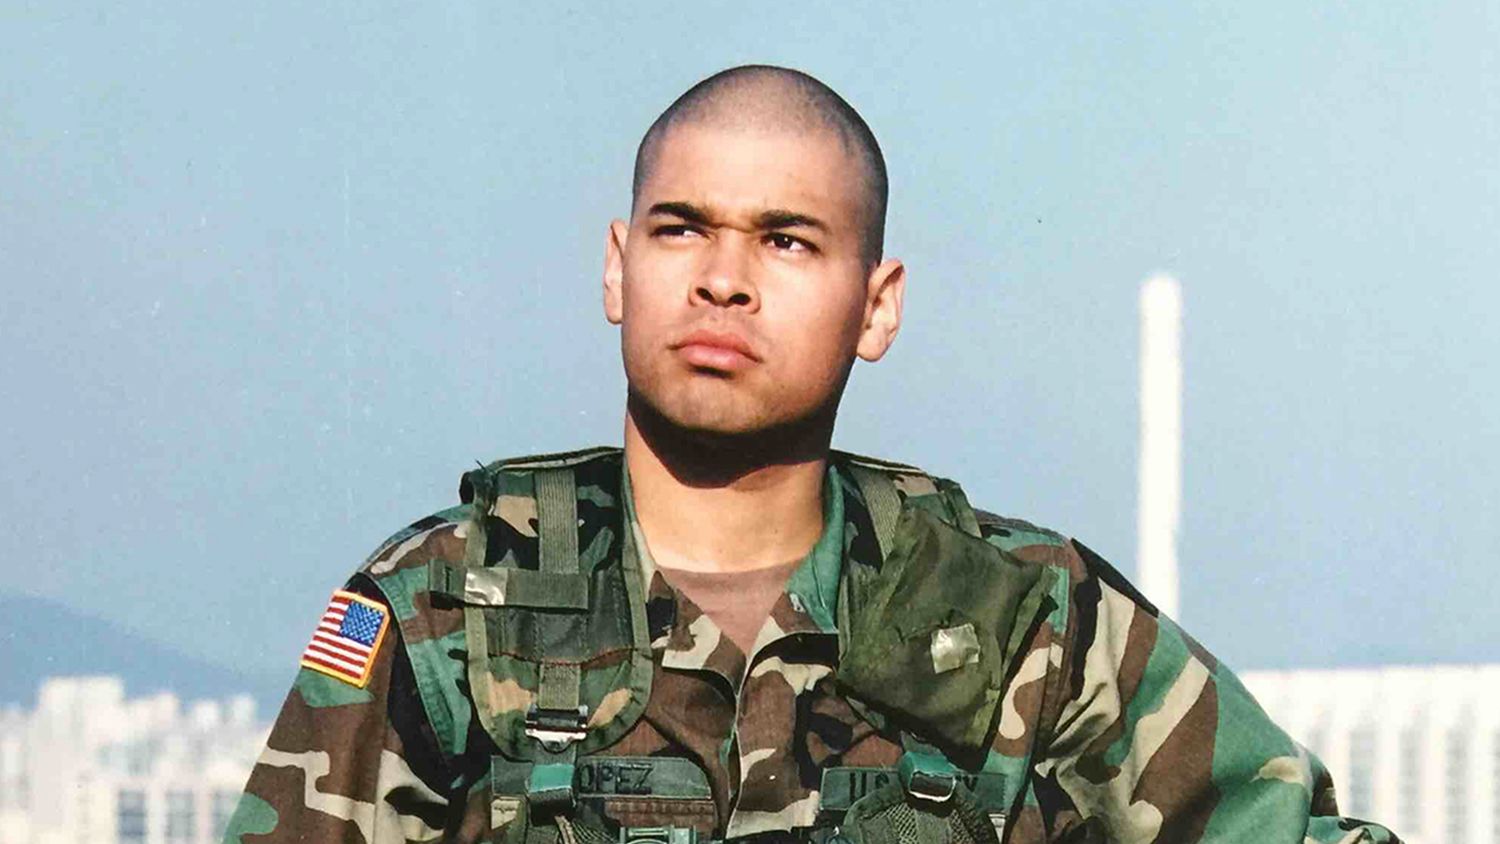 Food Science Student Mario Lopez in Army Uniform, Korea 2004